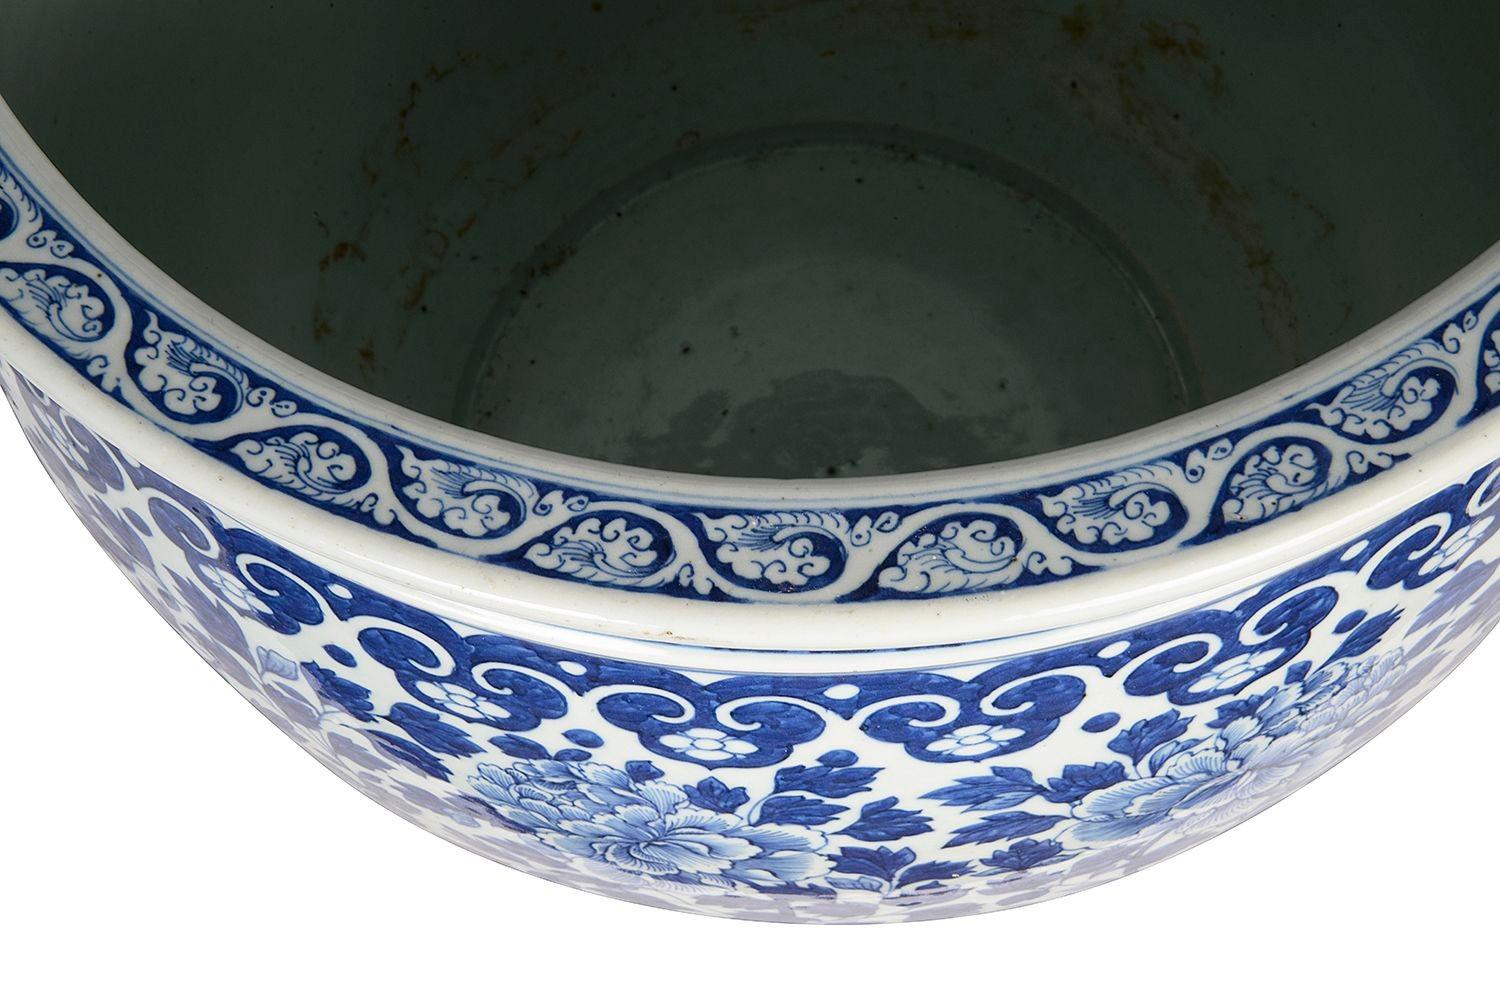 Eine beeindruckende chinesische Jardiniere aus blau-weißem Porzellan aus dem 19. Jahrhundert mit kräftigen Farben und klassischem Motivdekor an den Rändern sowie Chrysanthemen- und Blattdekor im Inneren.

Charge 75